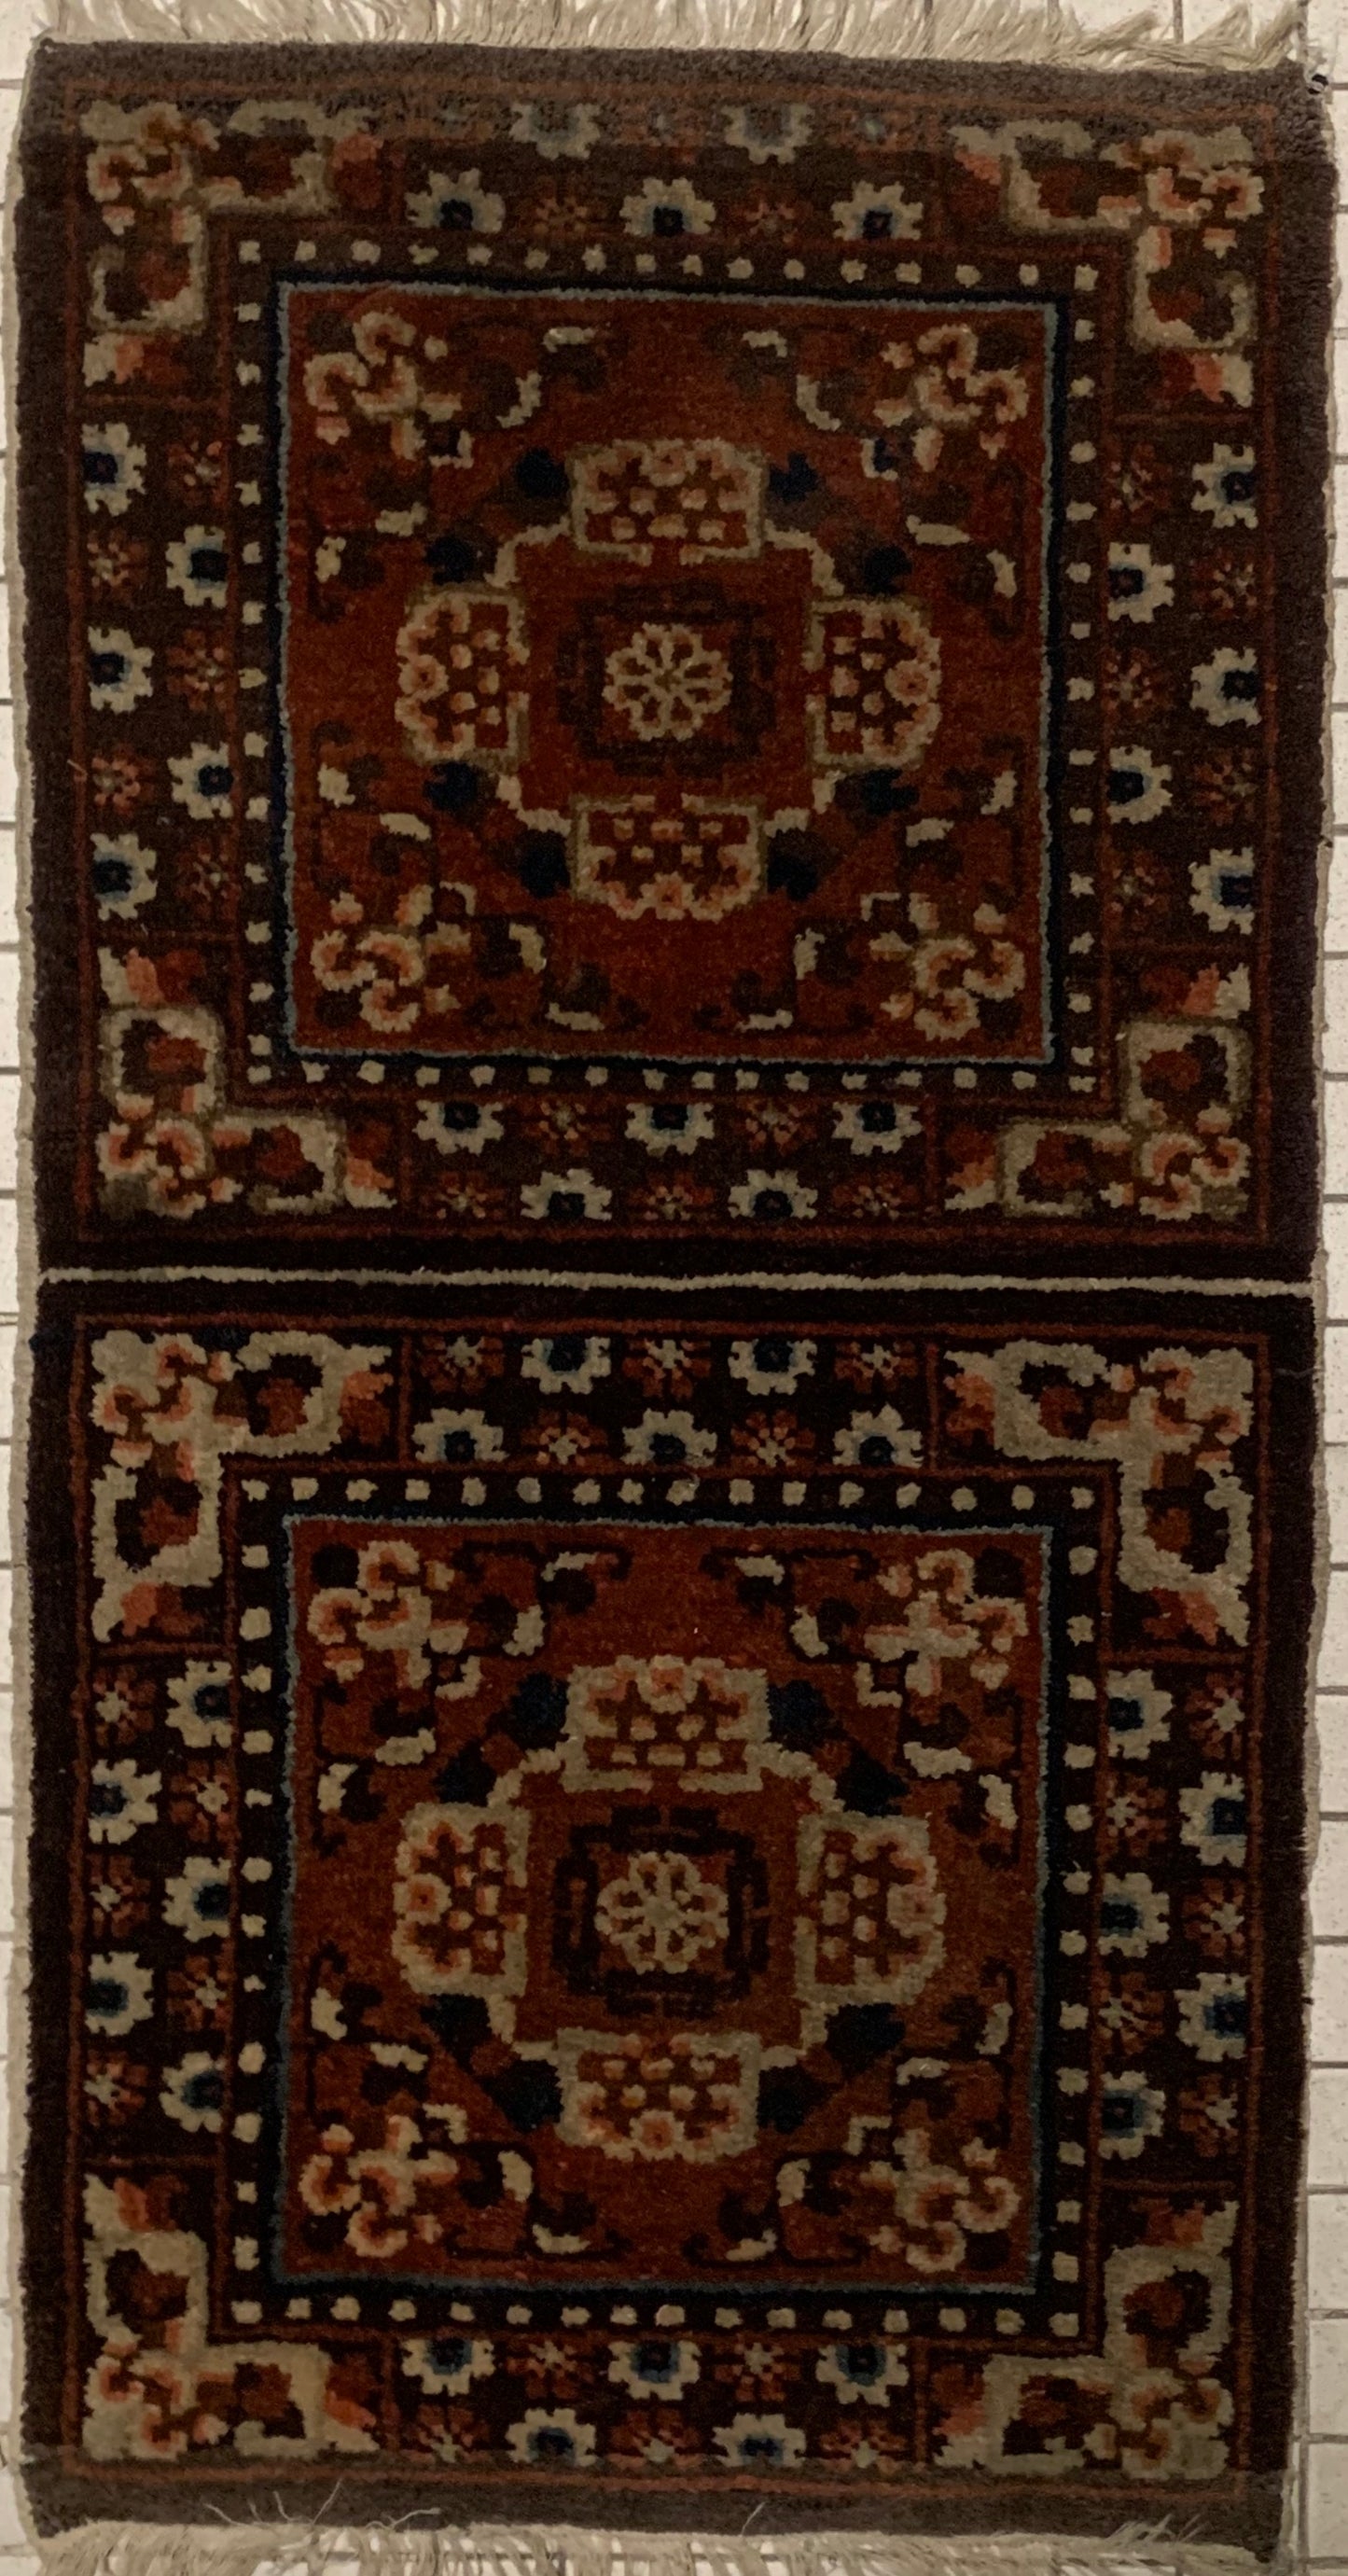 A Tibetan monastery meditation rug